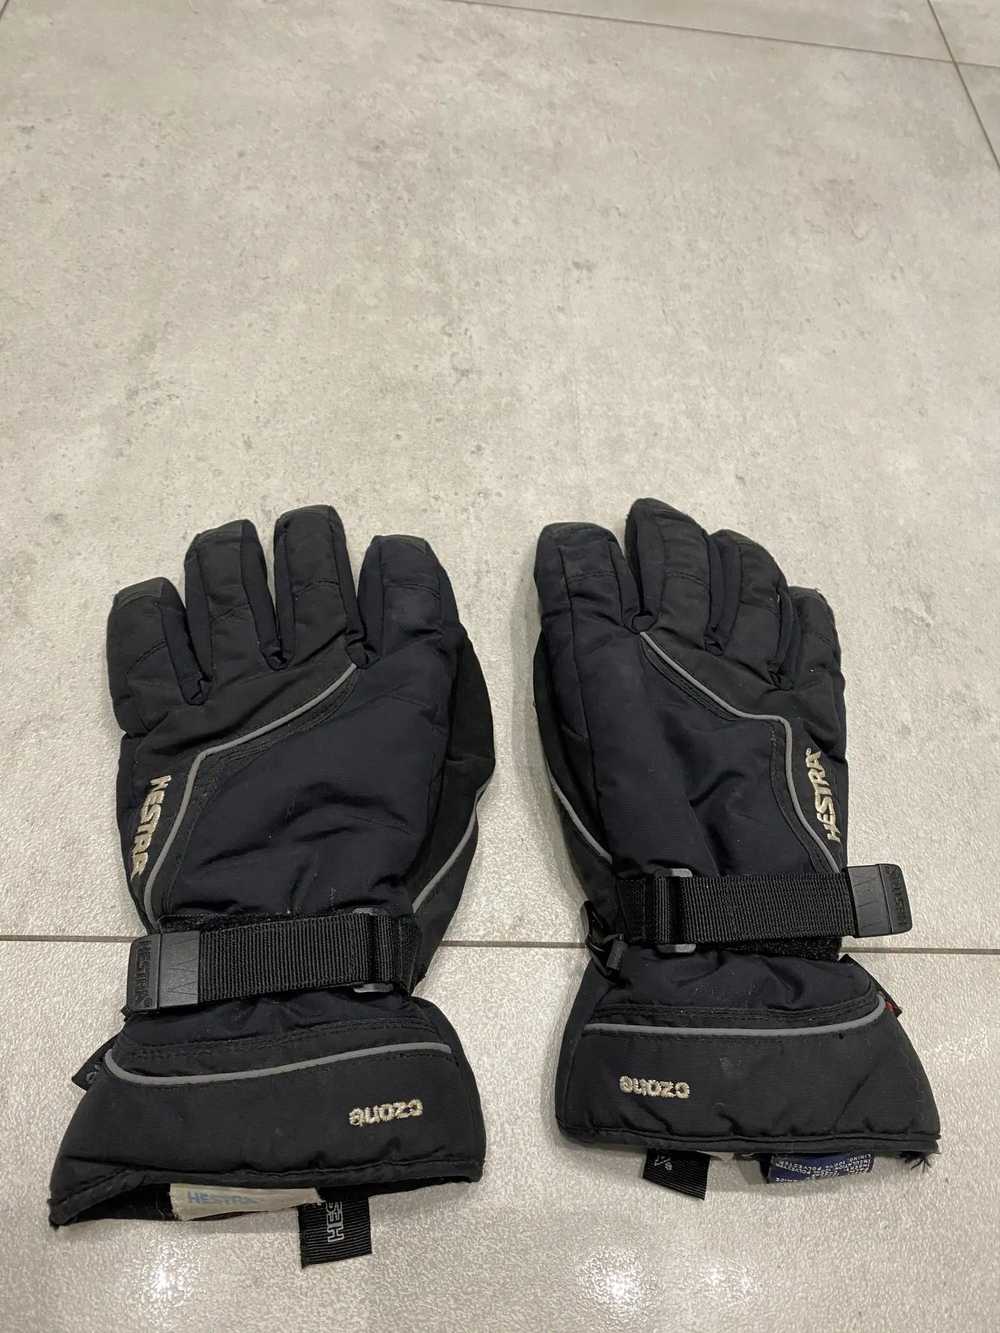 Hestra Hestra Sweden c zone gloves men's size 7 - image 1